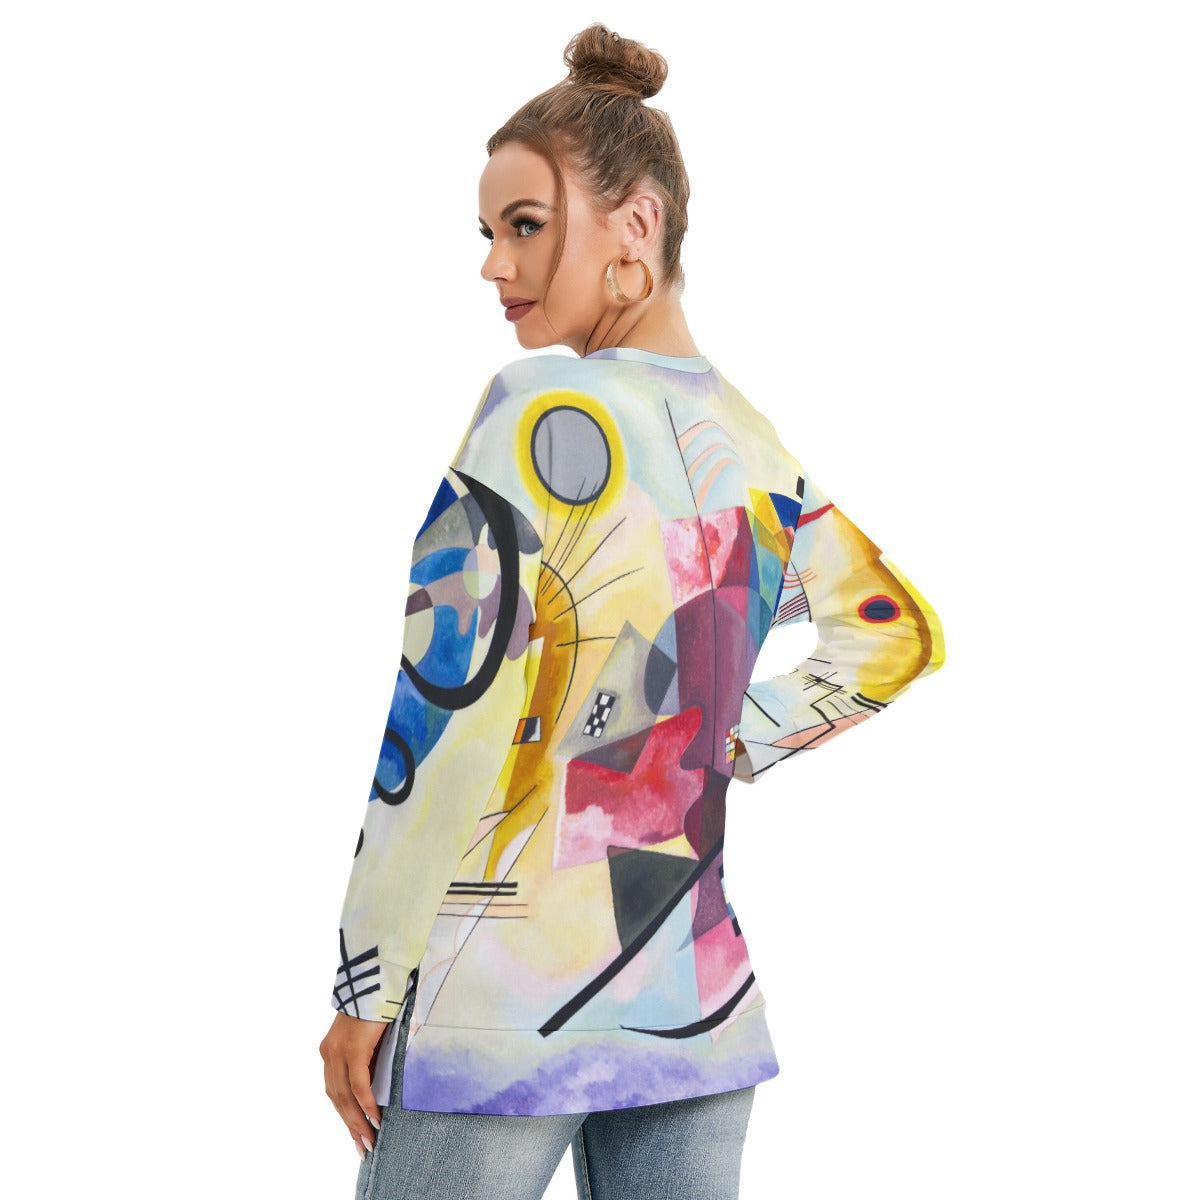 Kandinsky Inspired Graphic Sweatshirt for Women